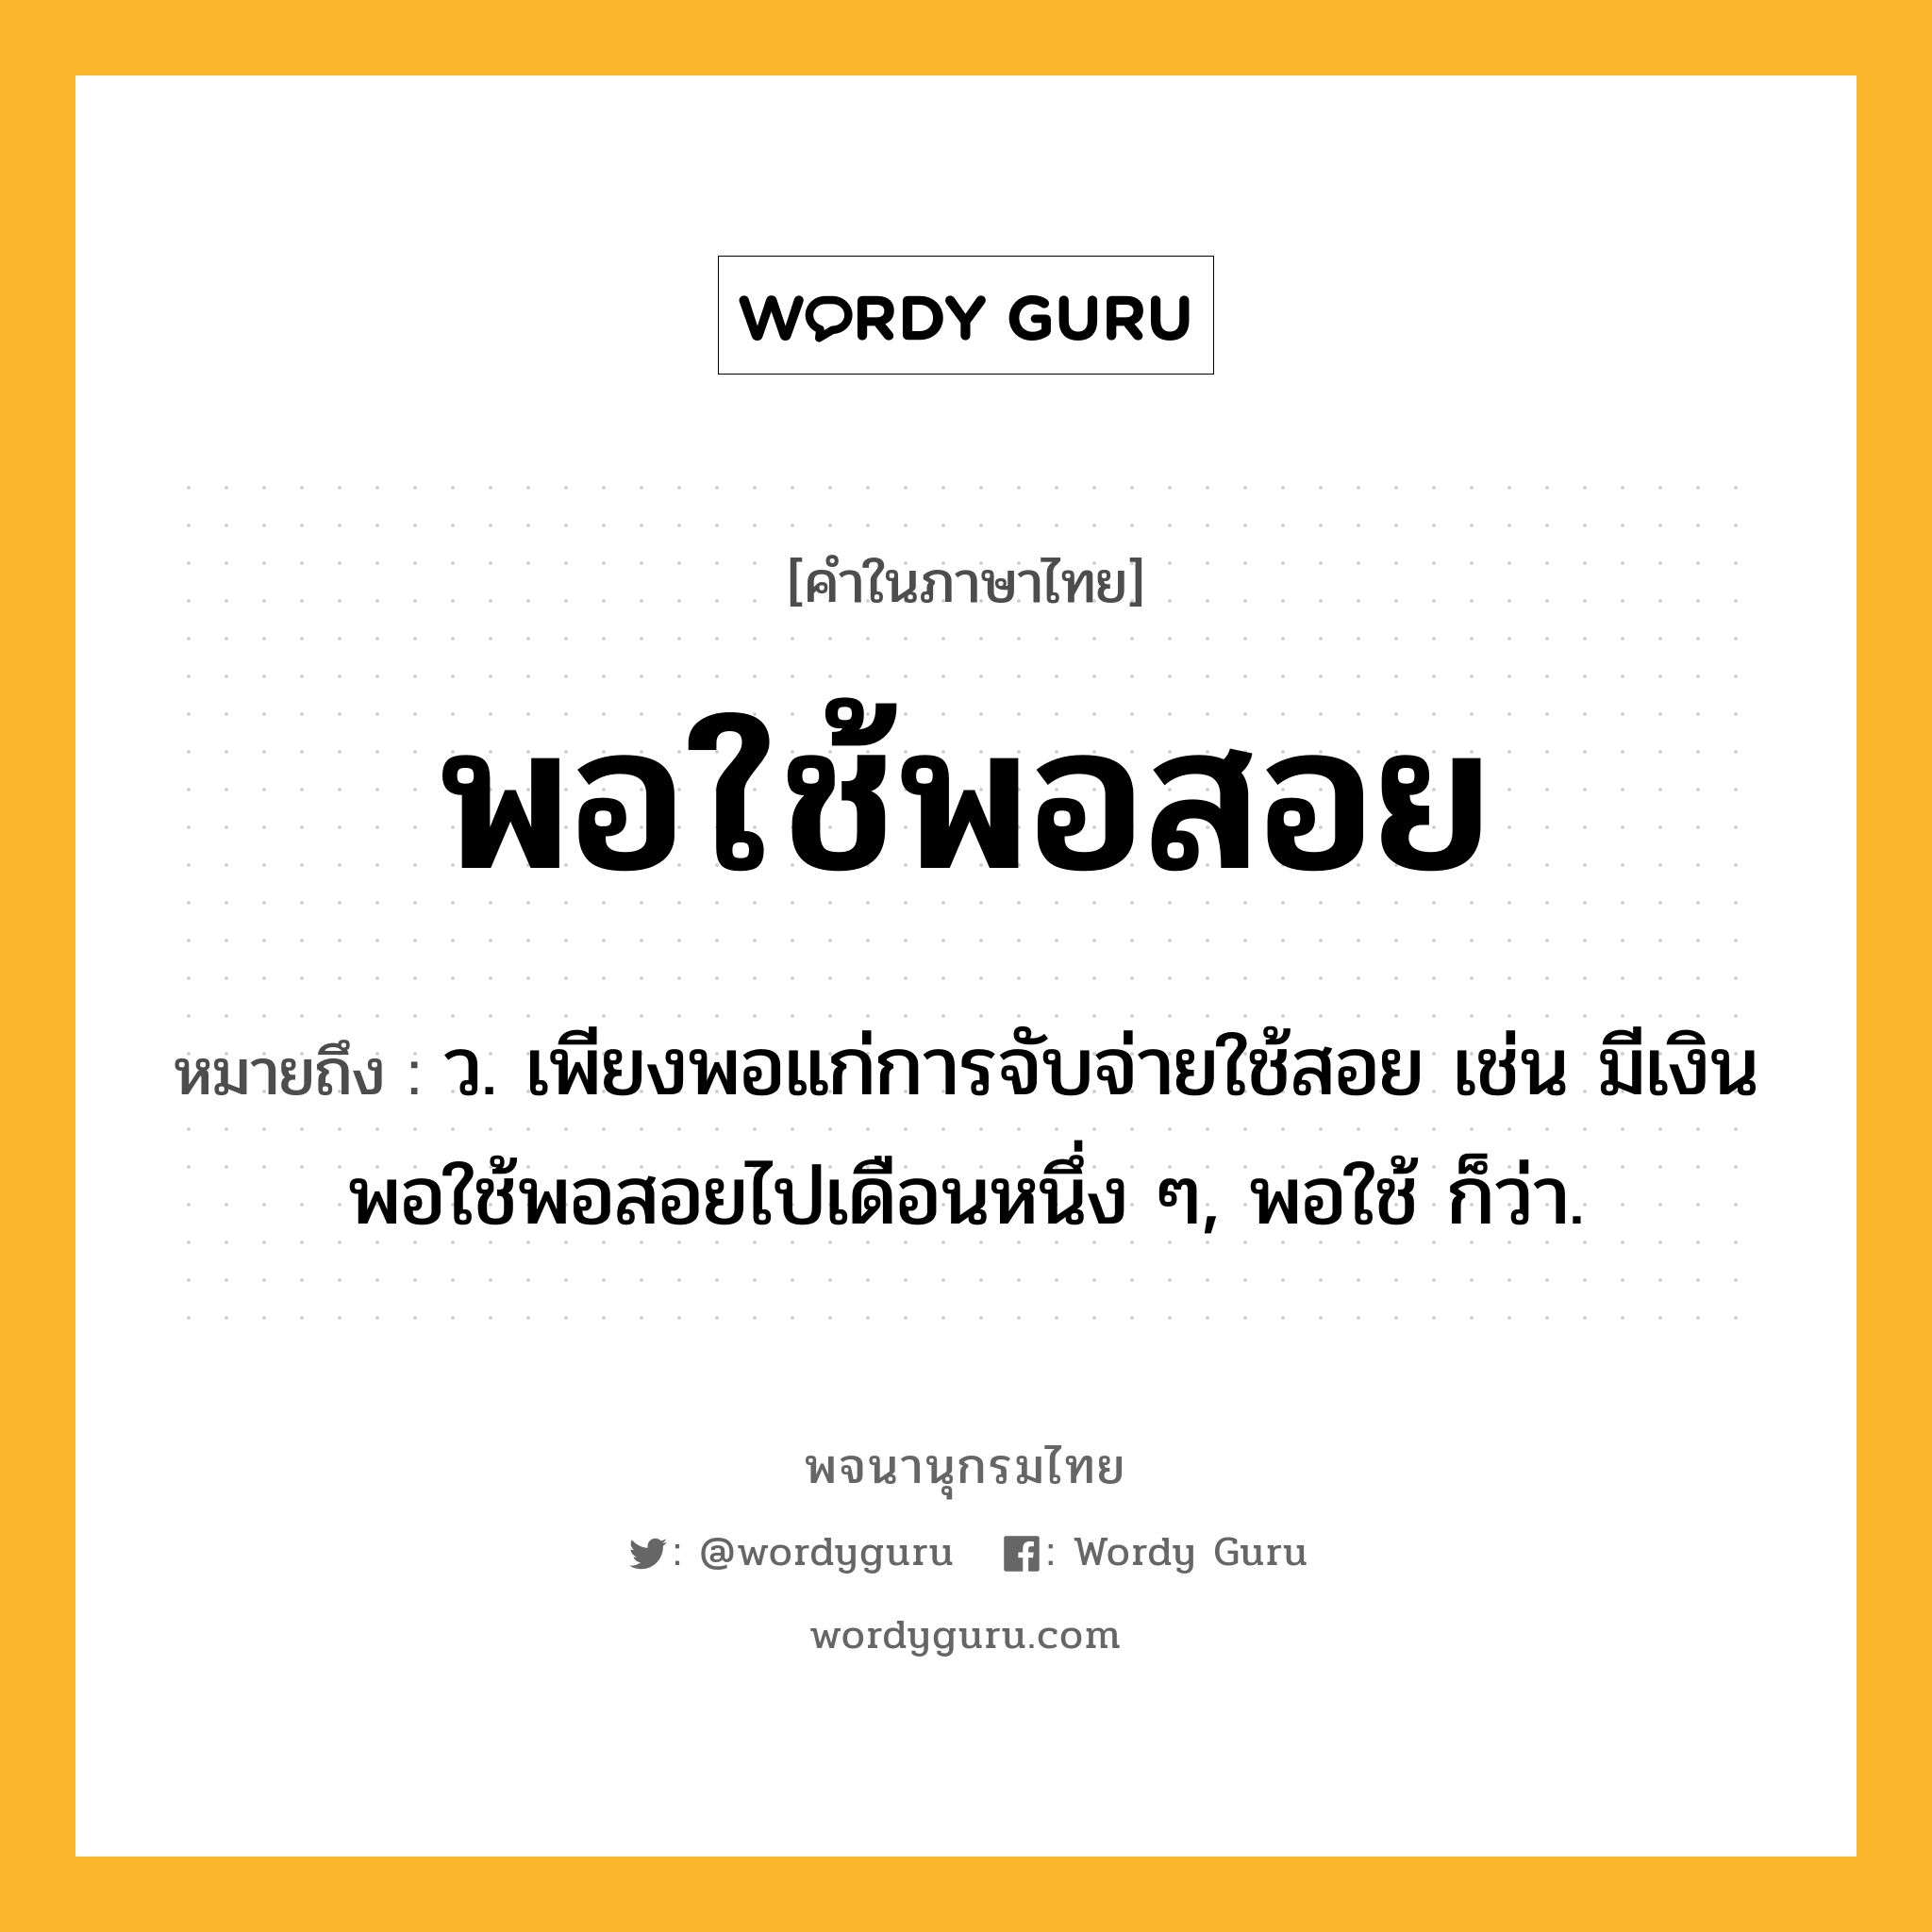 พอใช้พอสอย หมายถึงอะไร?, คำในภาษาไทย พอใช้พอสอย หมายถึง ว. เพียงพอแก่การจับจ่ายใช้สอย เช่น มีเงินพอใช้พอสอยไปเดือนหนึ่ง ๆ, พอใช้ ก็ว่า.